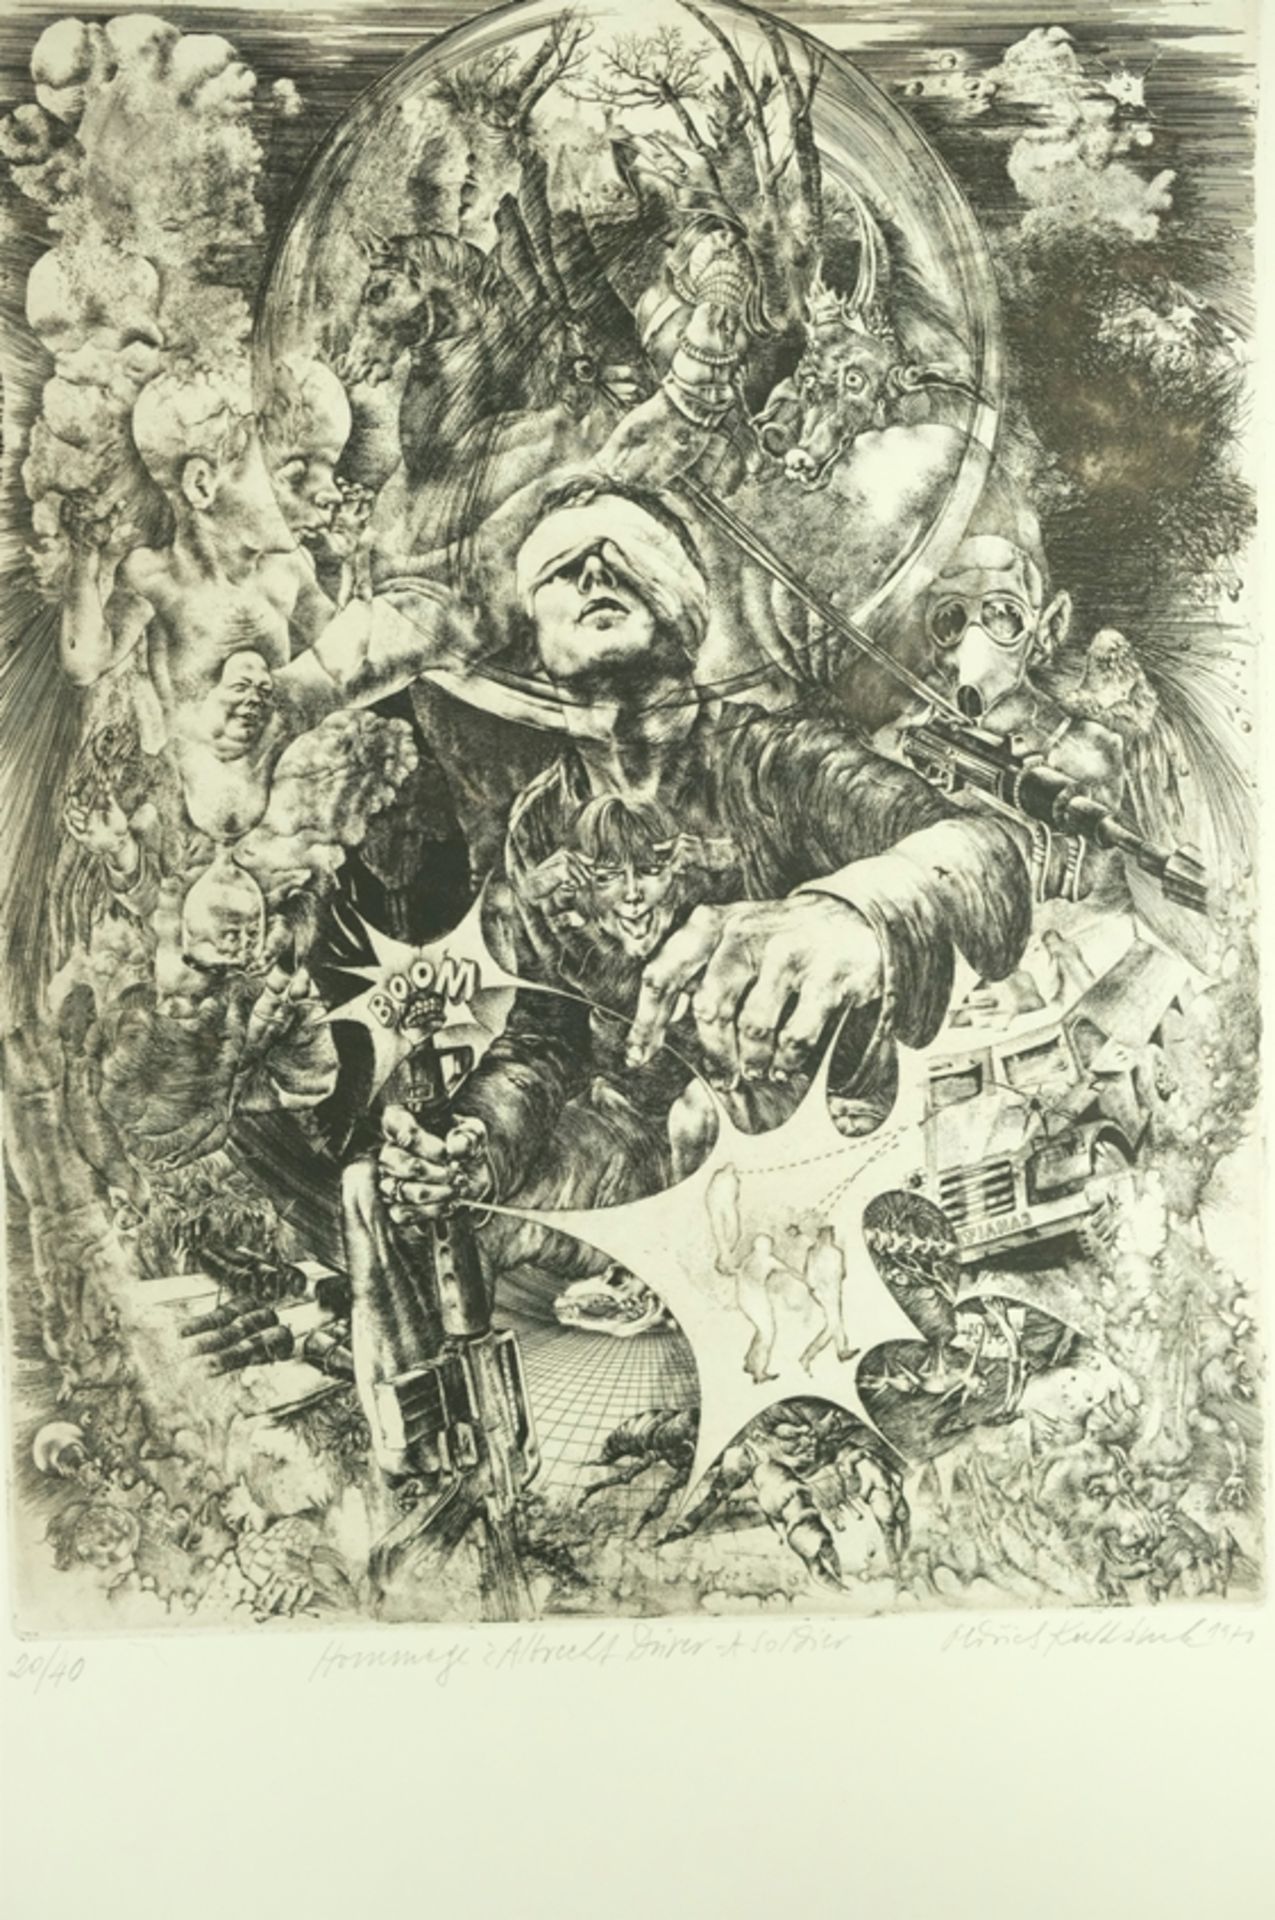 KULHANEK Oldrich "Hommage à Albrecht Dürer - A Soldier", in der Bildmitte ein Soldat, um ihn herum